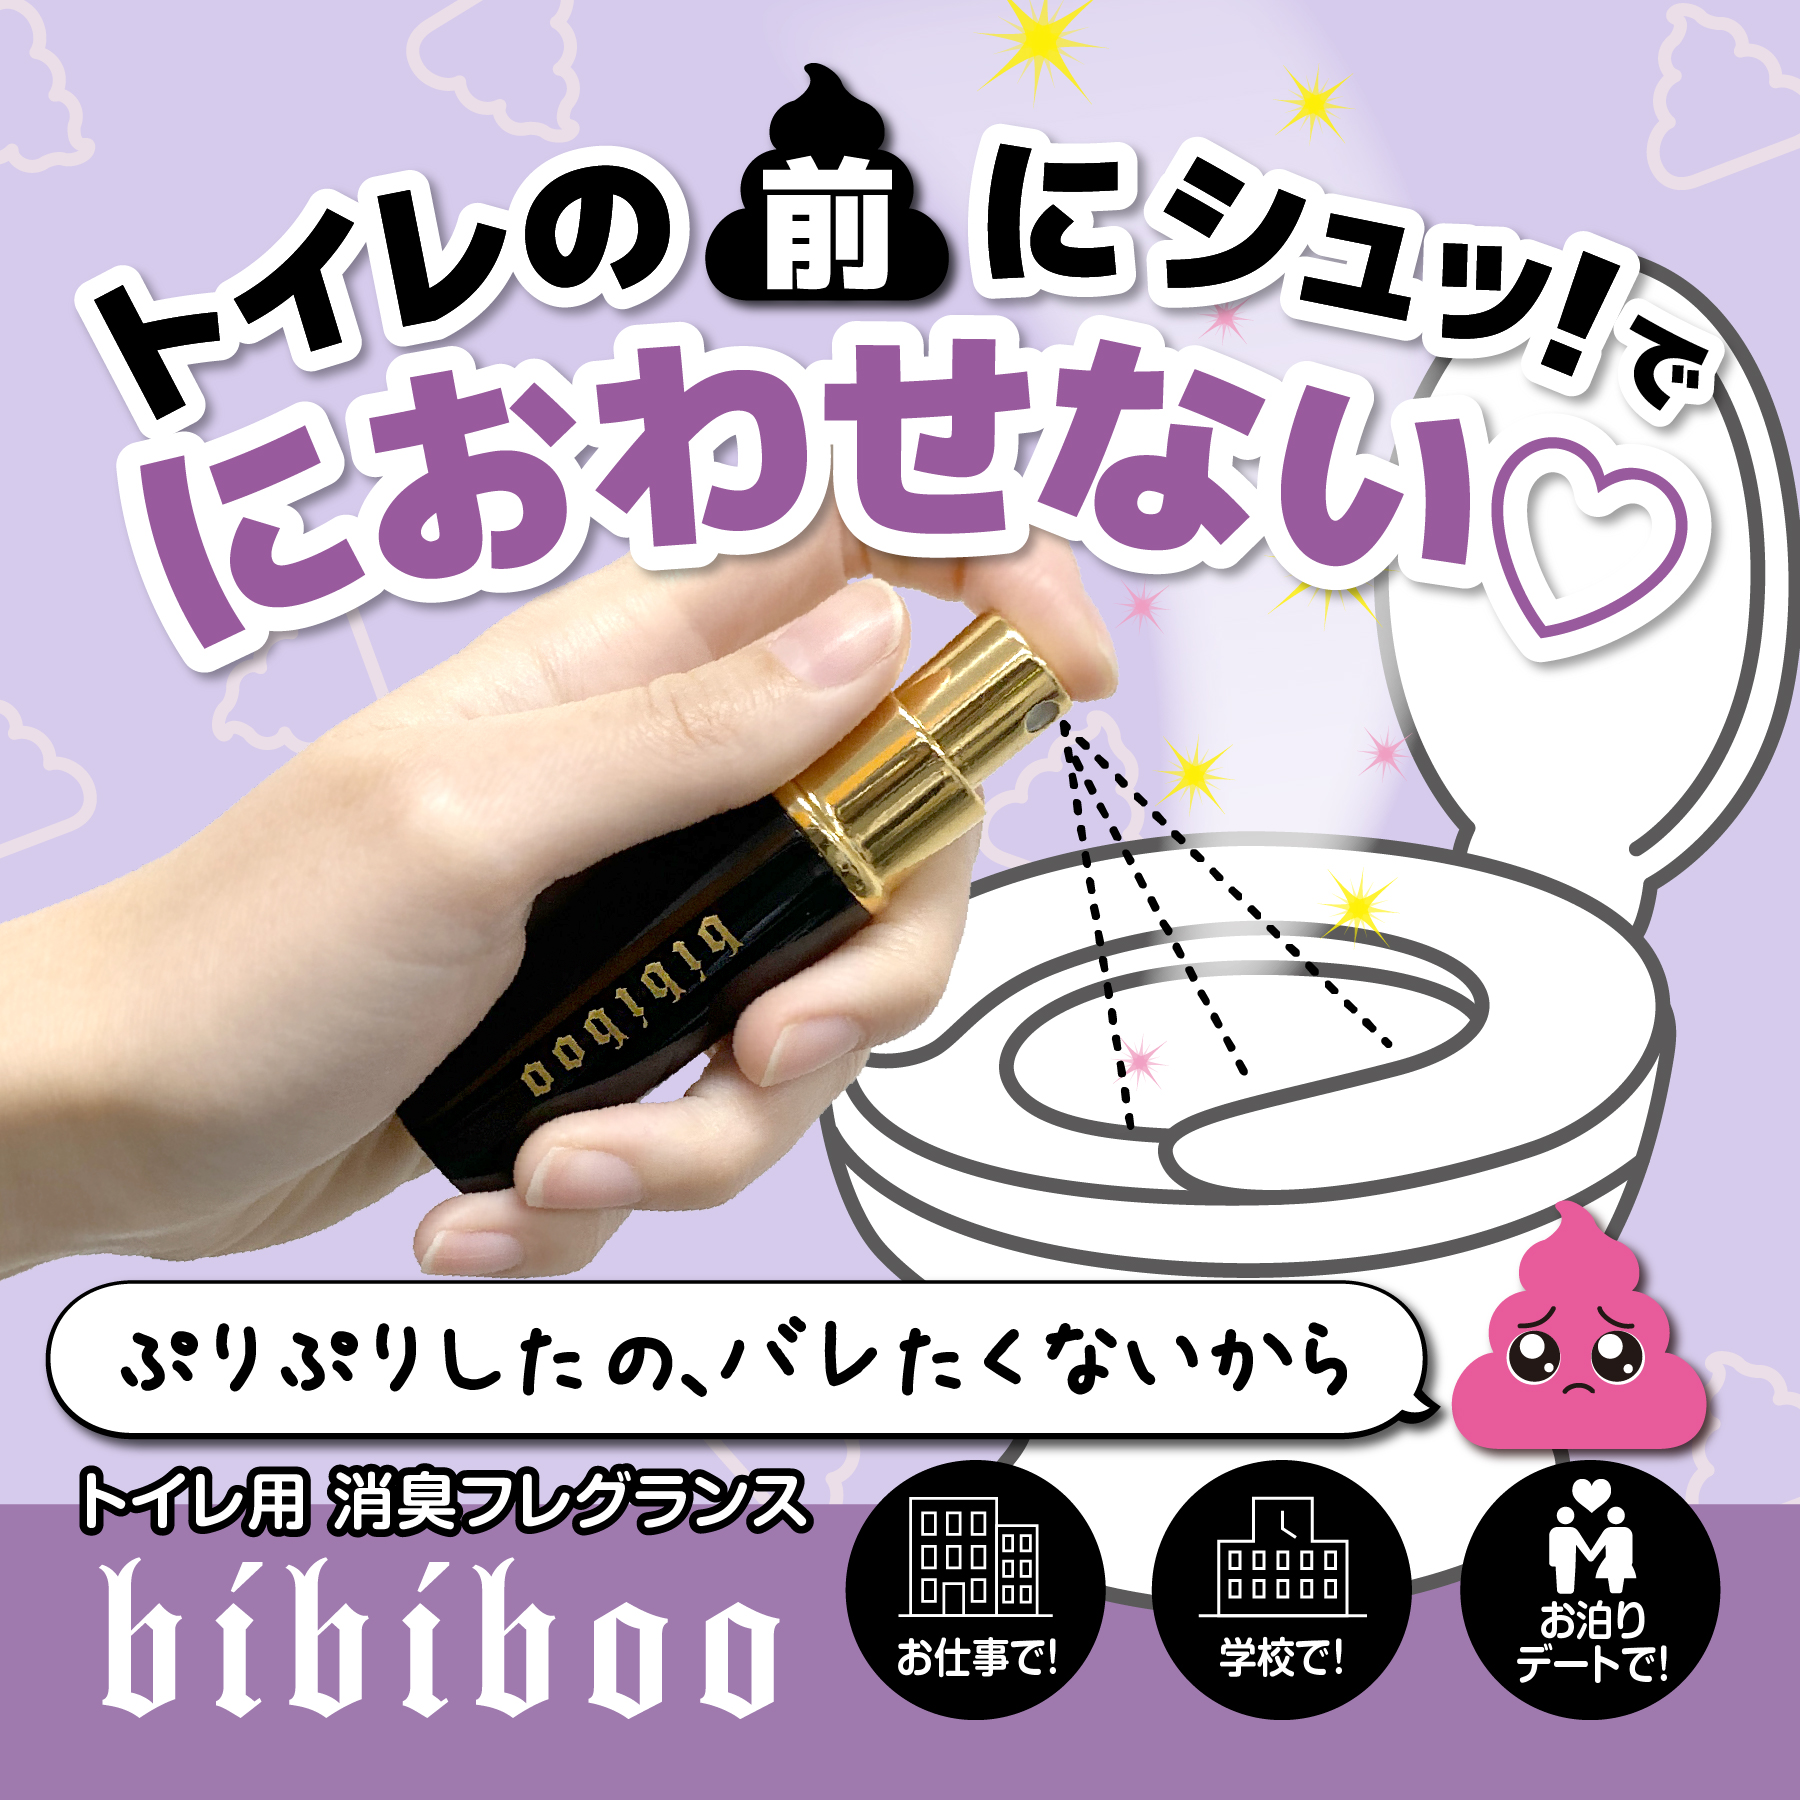 bibiboo_blog.jpg